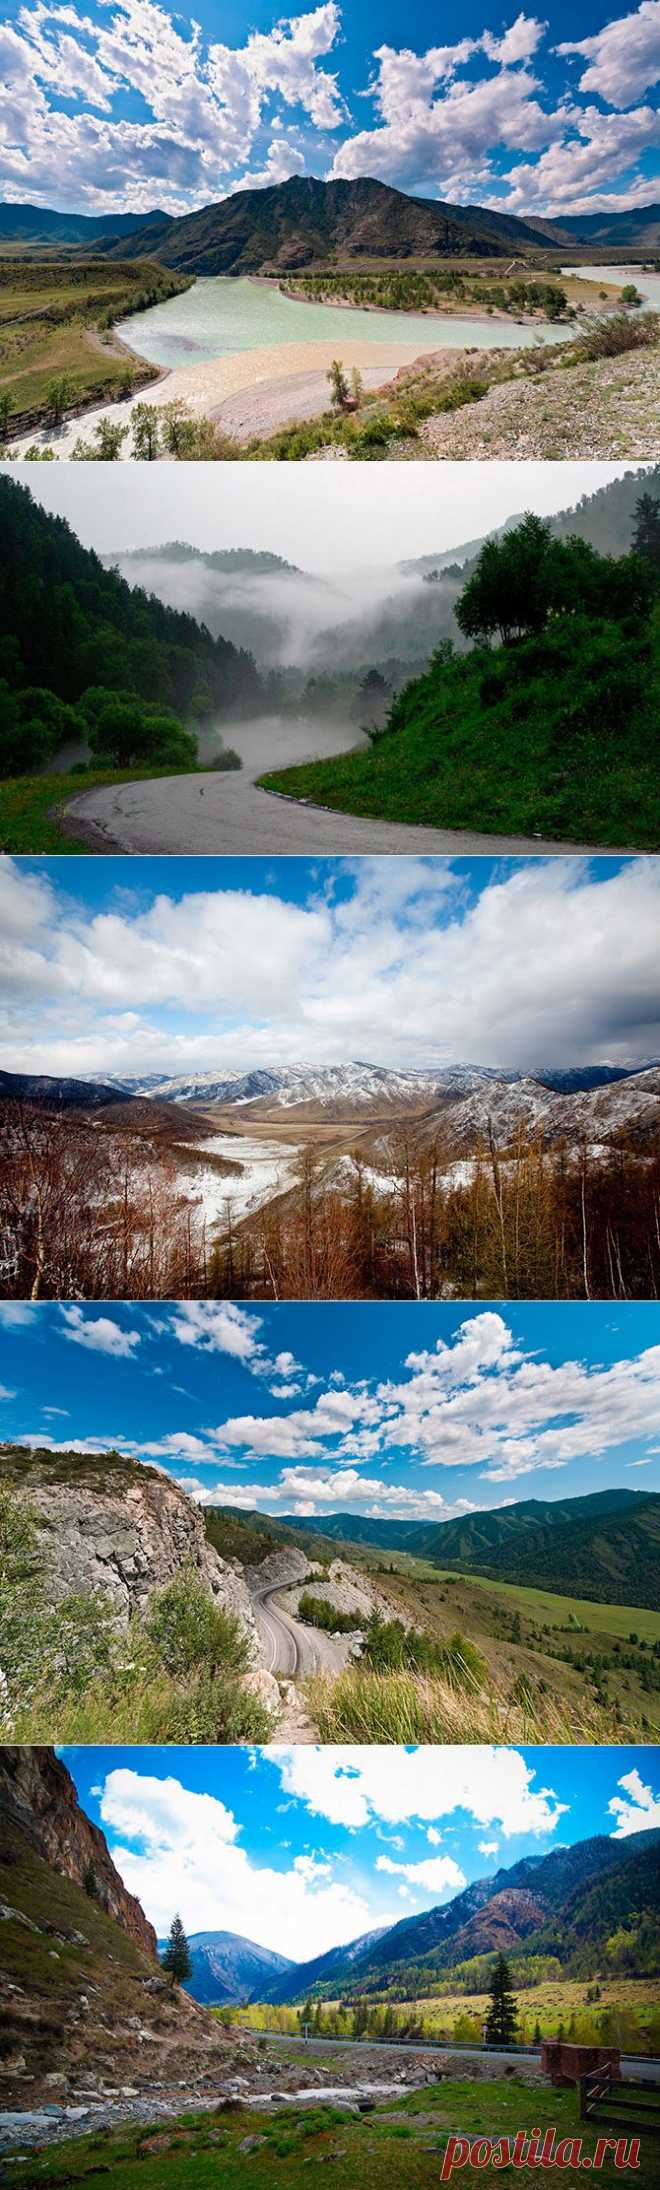 Путешествие по самой красивой трассе в России